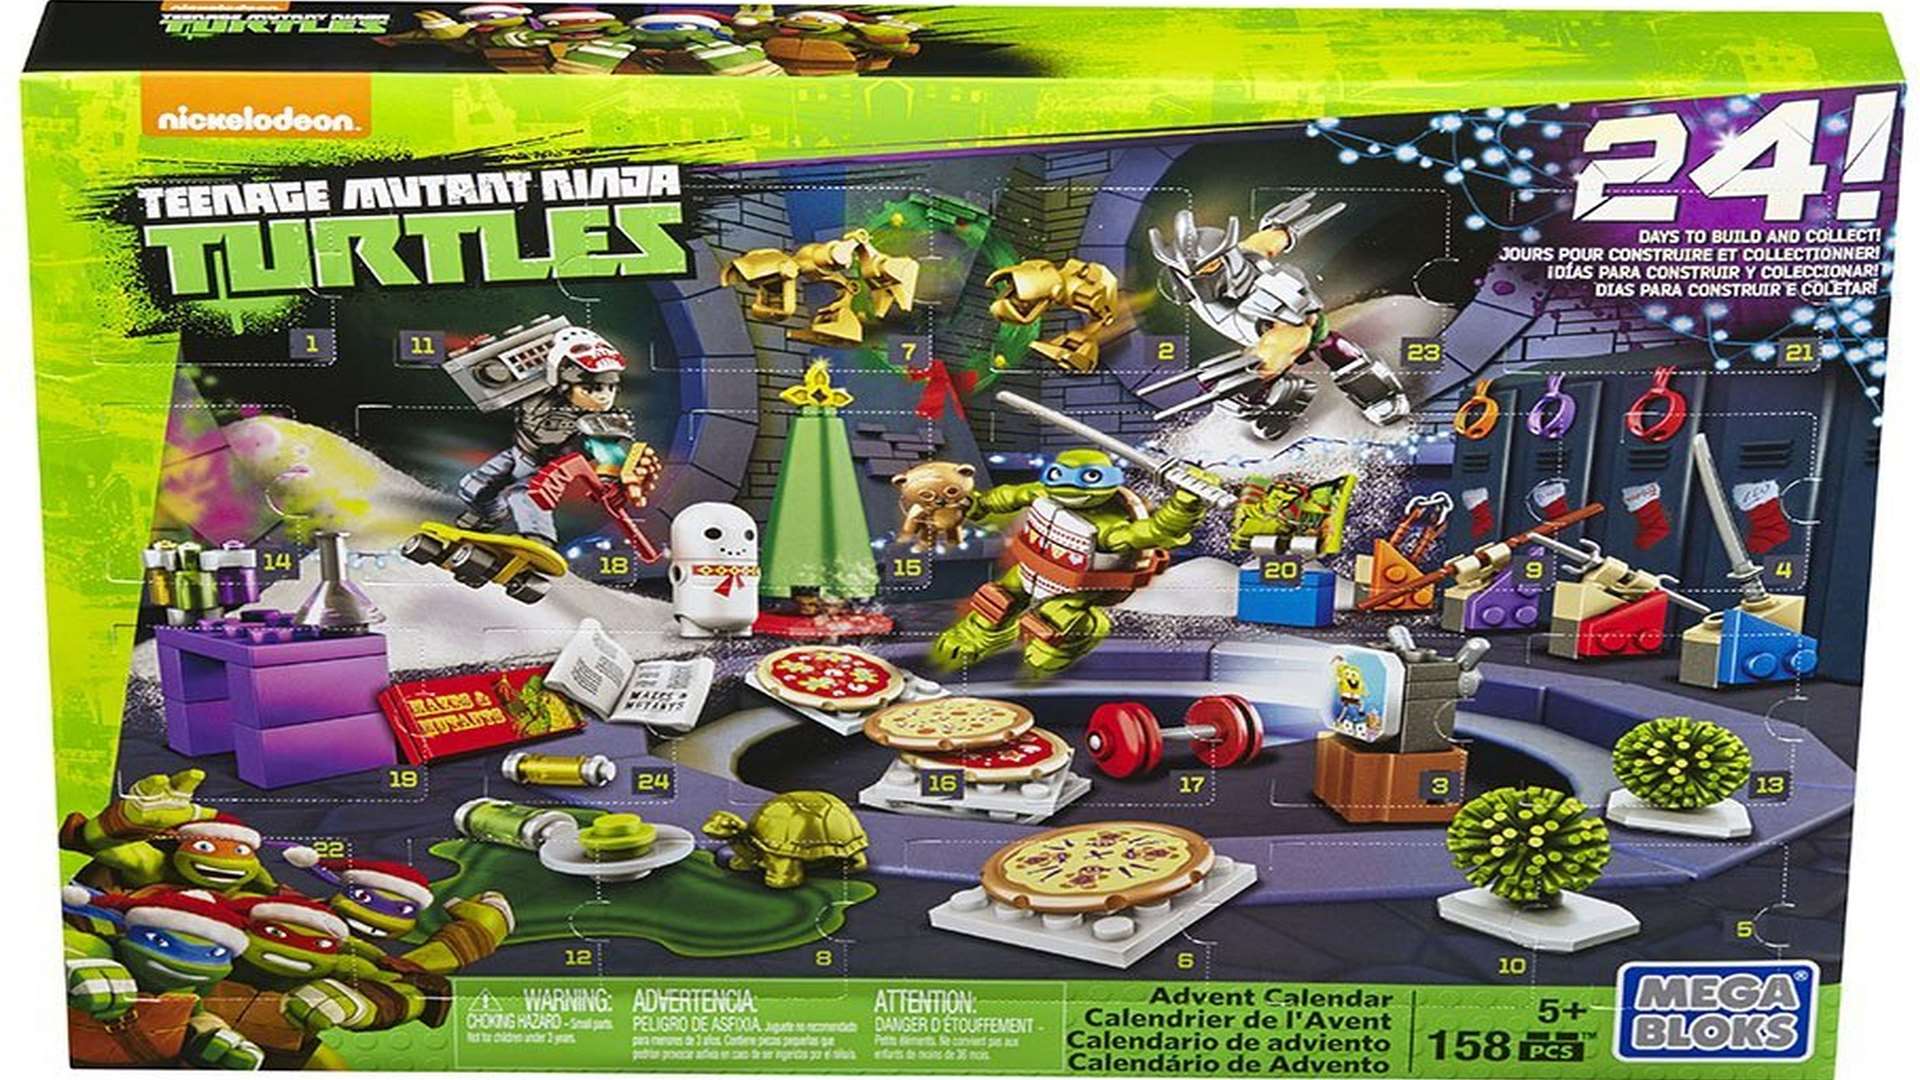 Mega Bloks Teenage Mutant Ninja Turtles advent calendar with 158 pieces, Amazon, £15.99